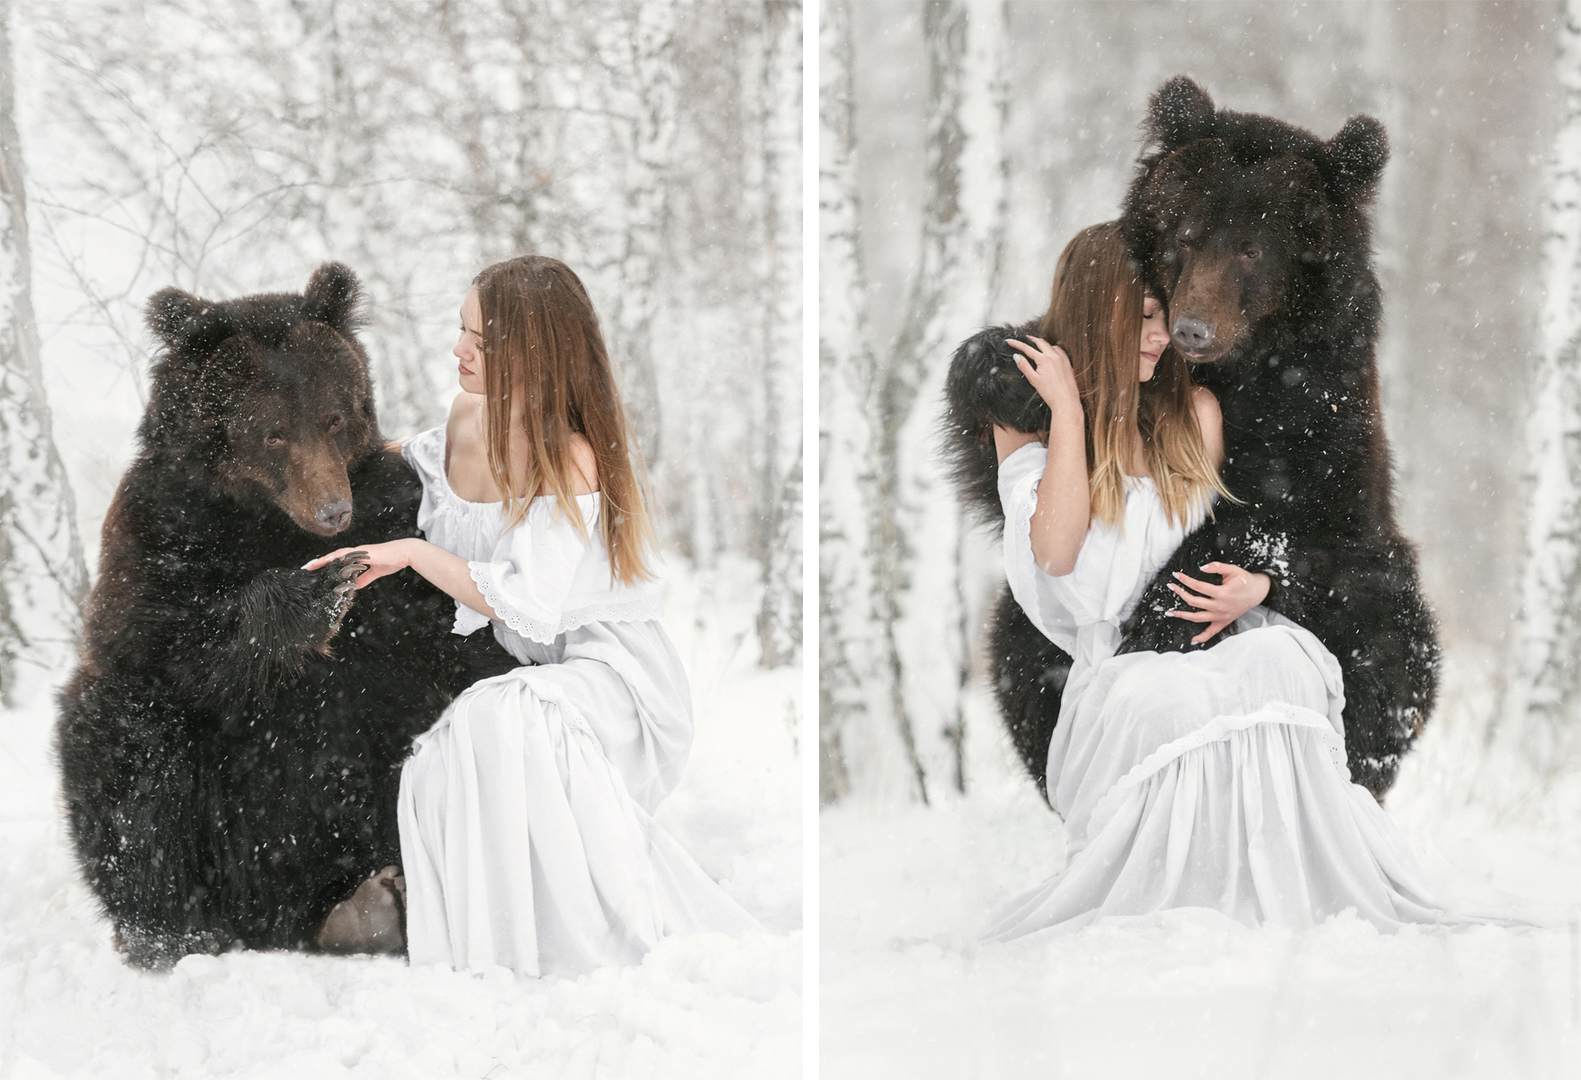 Девушка с медведем в обнимку